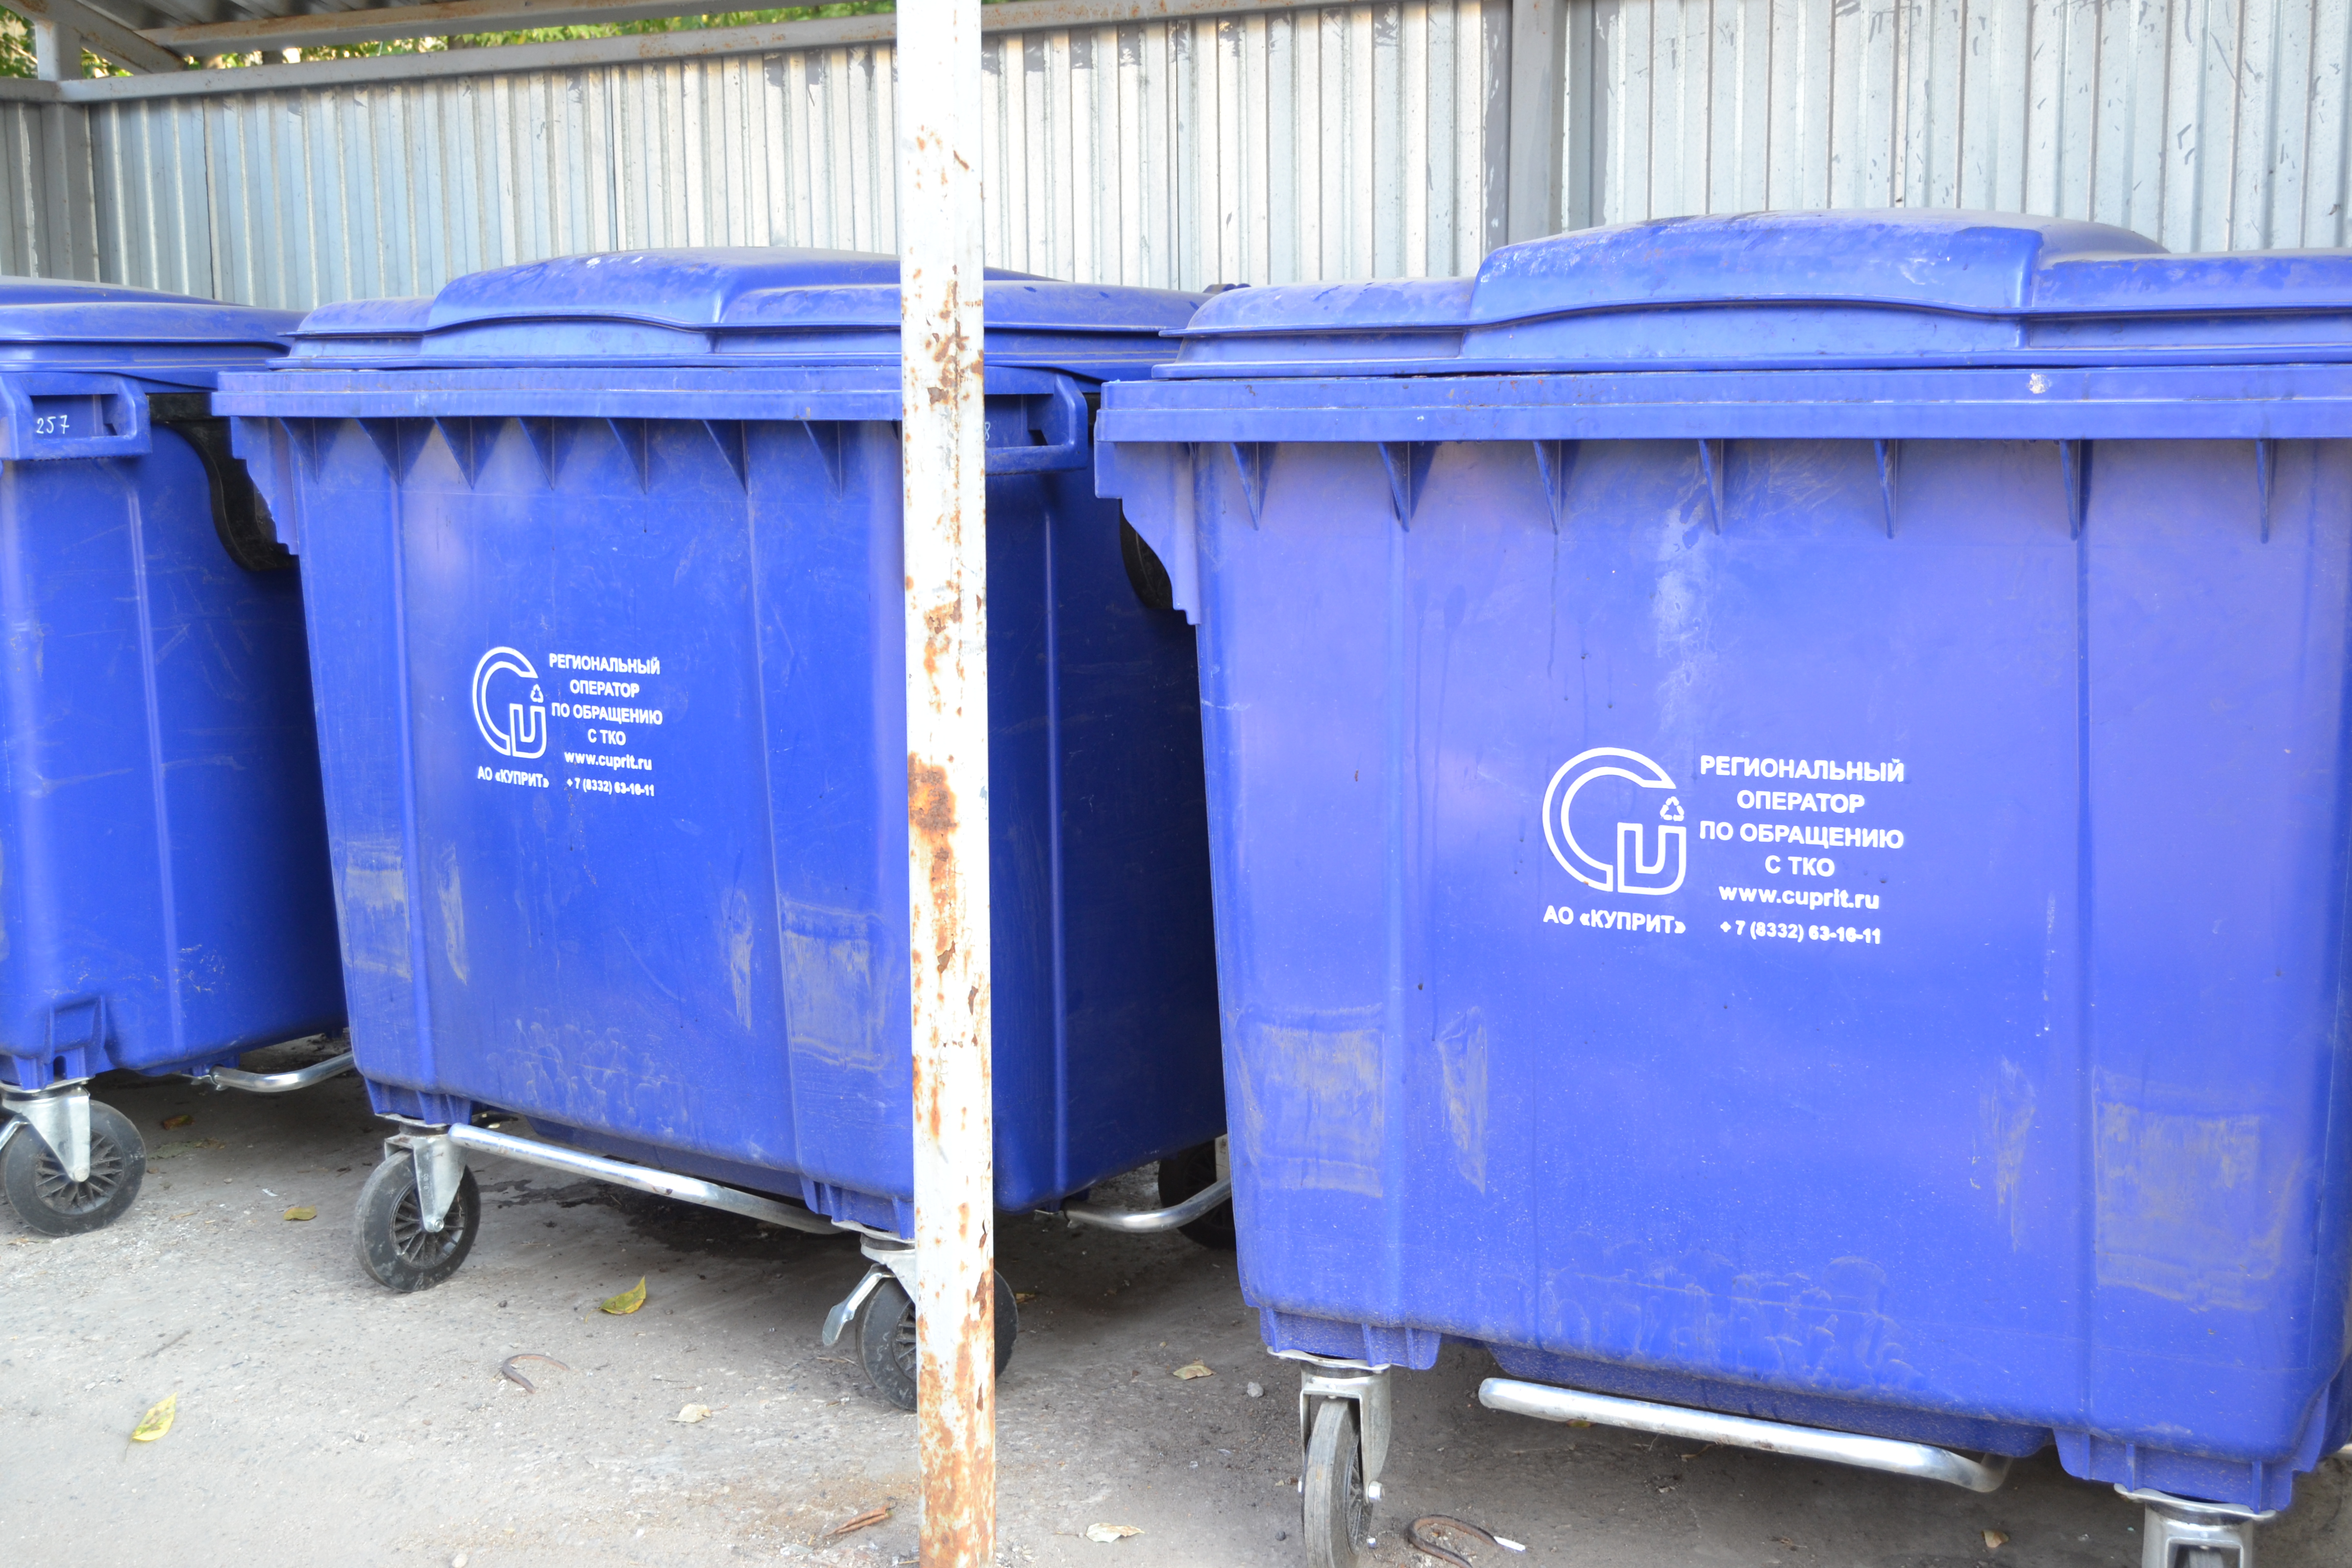 В Кирове поставят мусорные контейнеры единого цвета, материала и формы